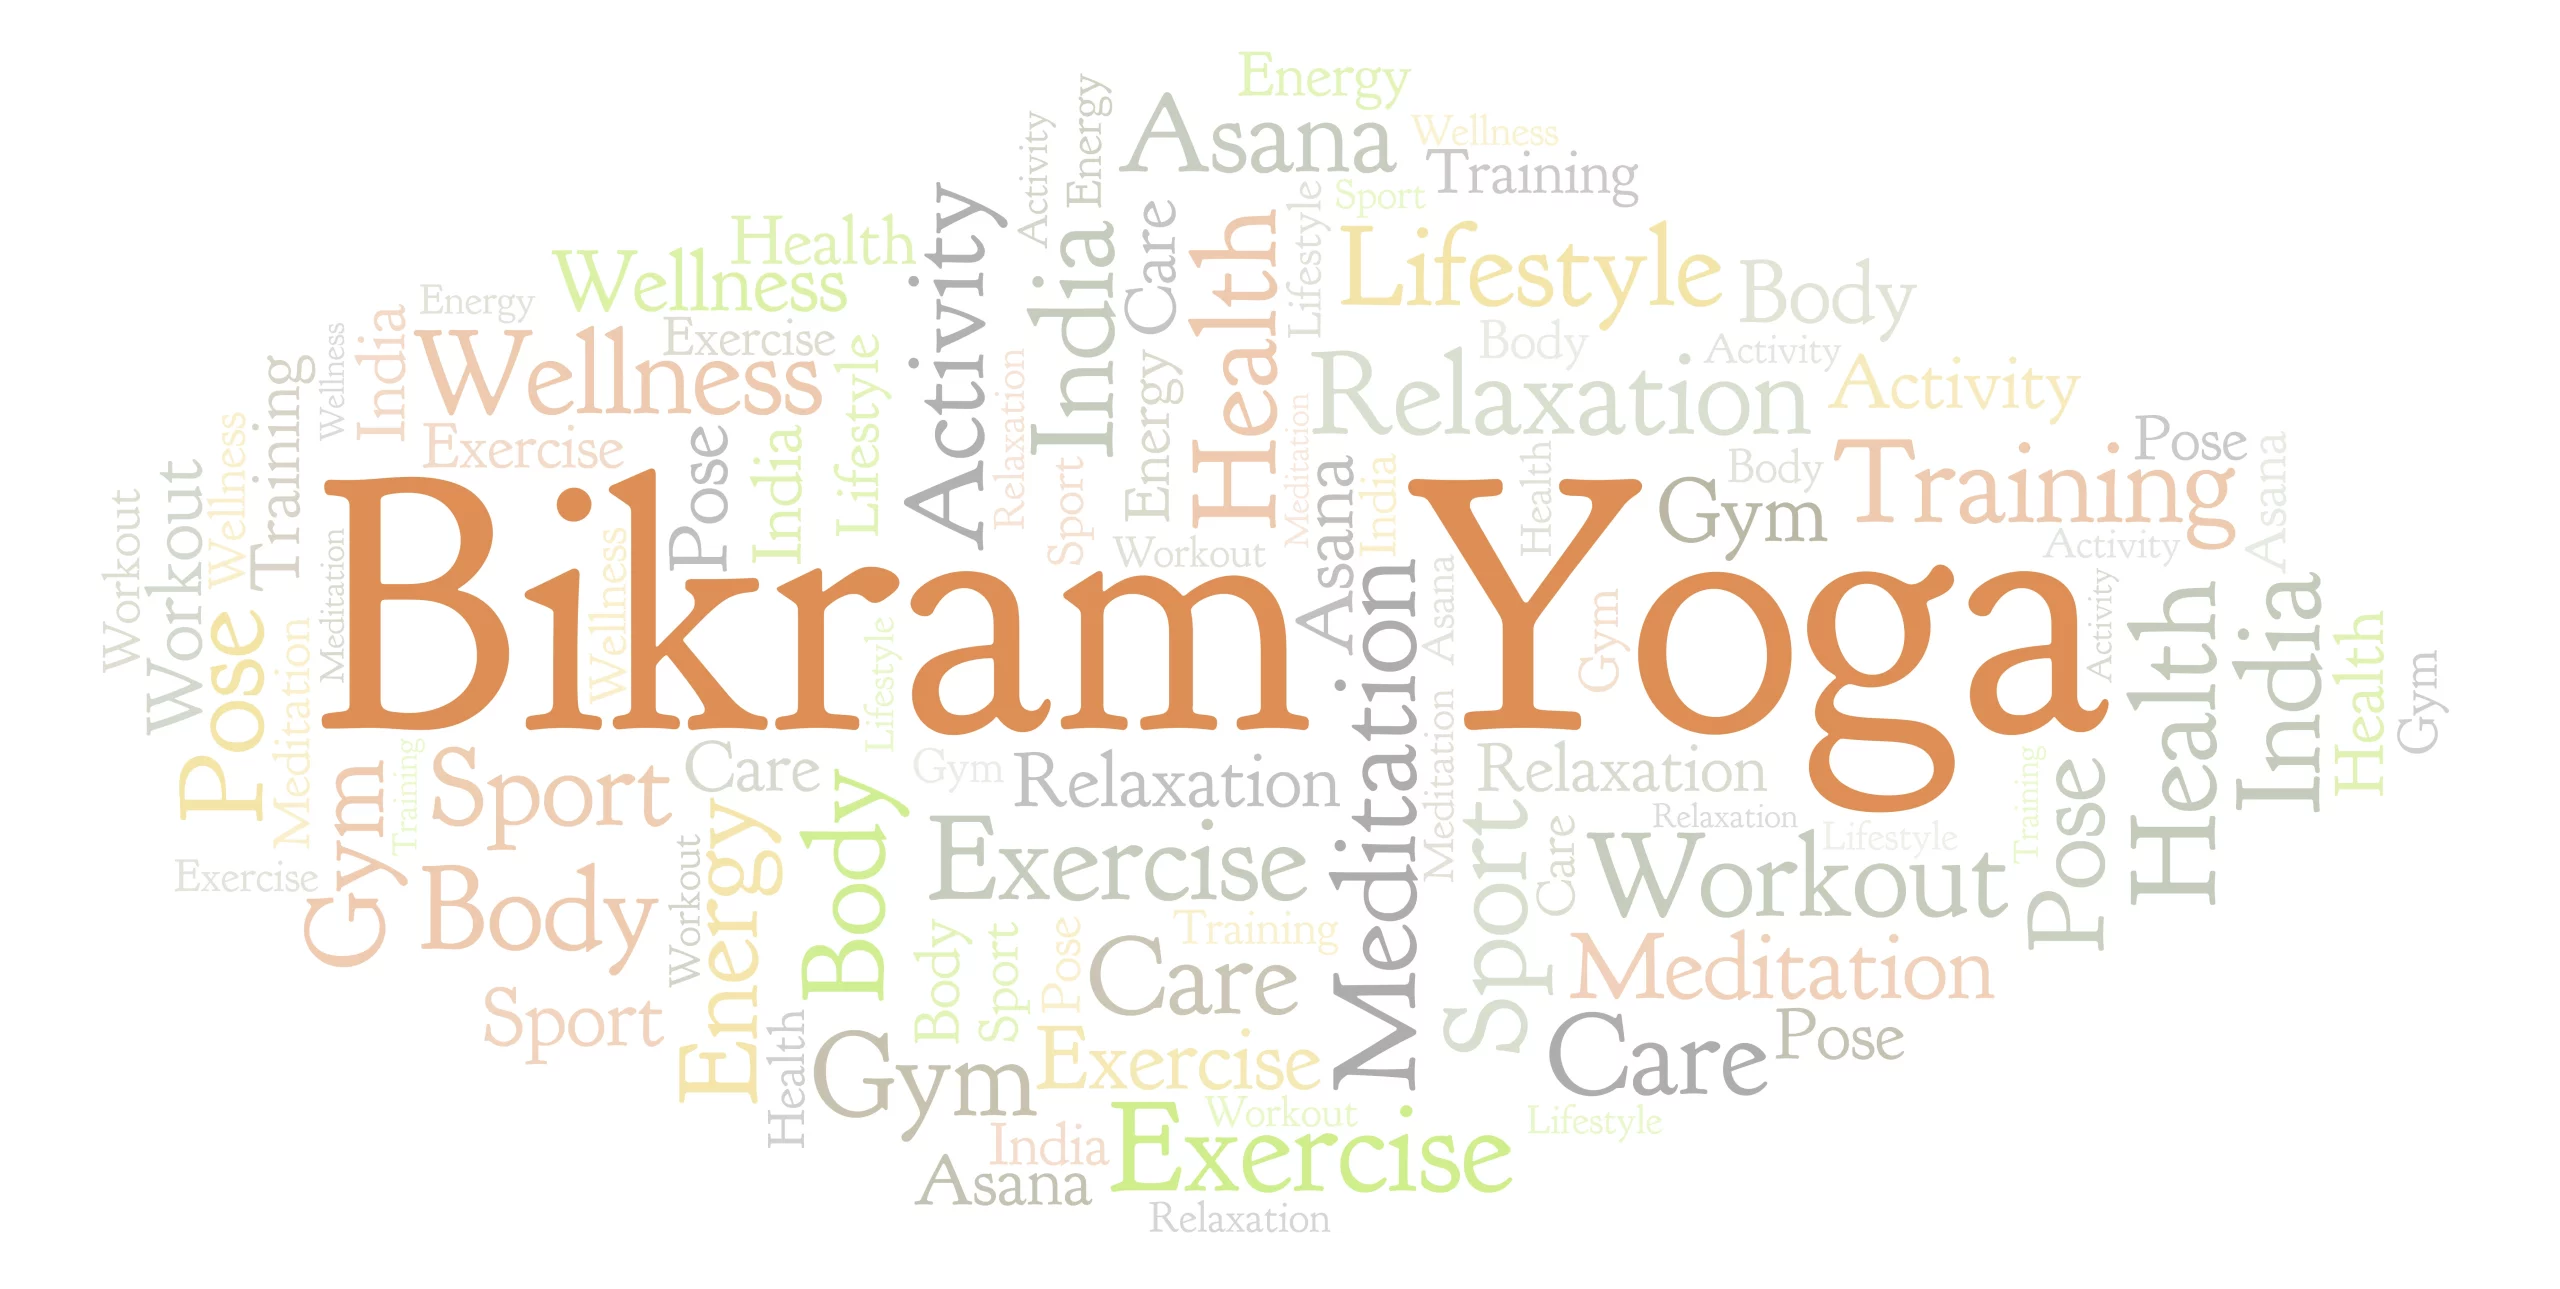 Bikram Yoga: Health Benefits And Things To Keep In Mind - Tata 1mg